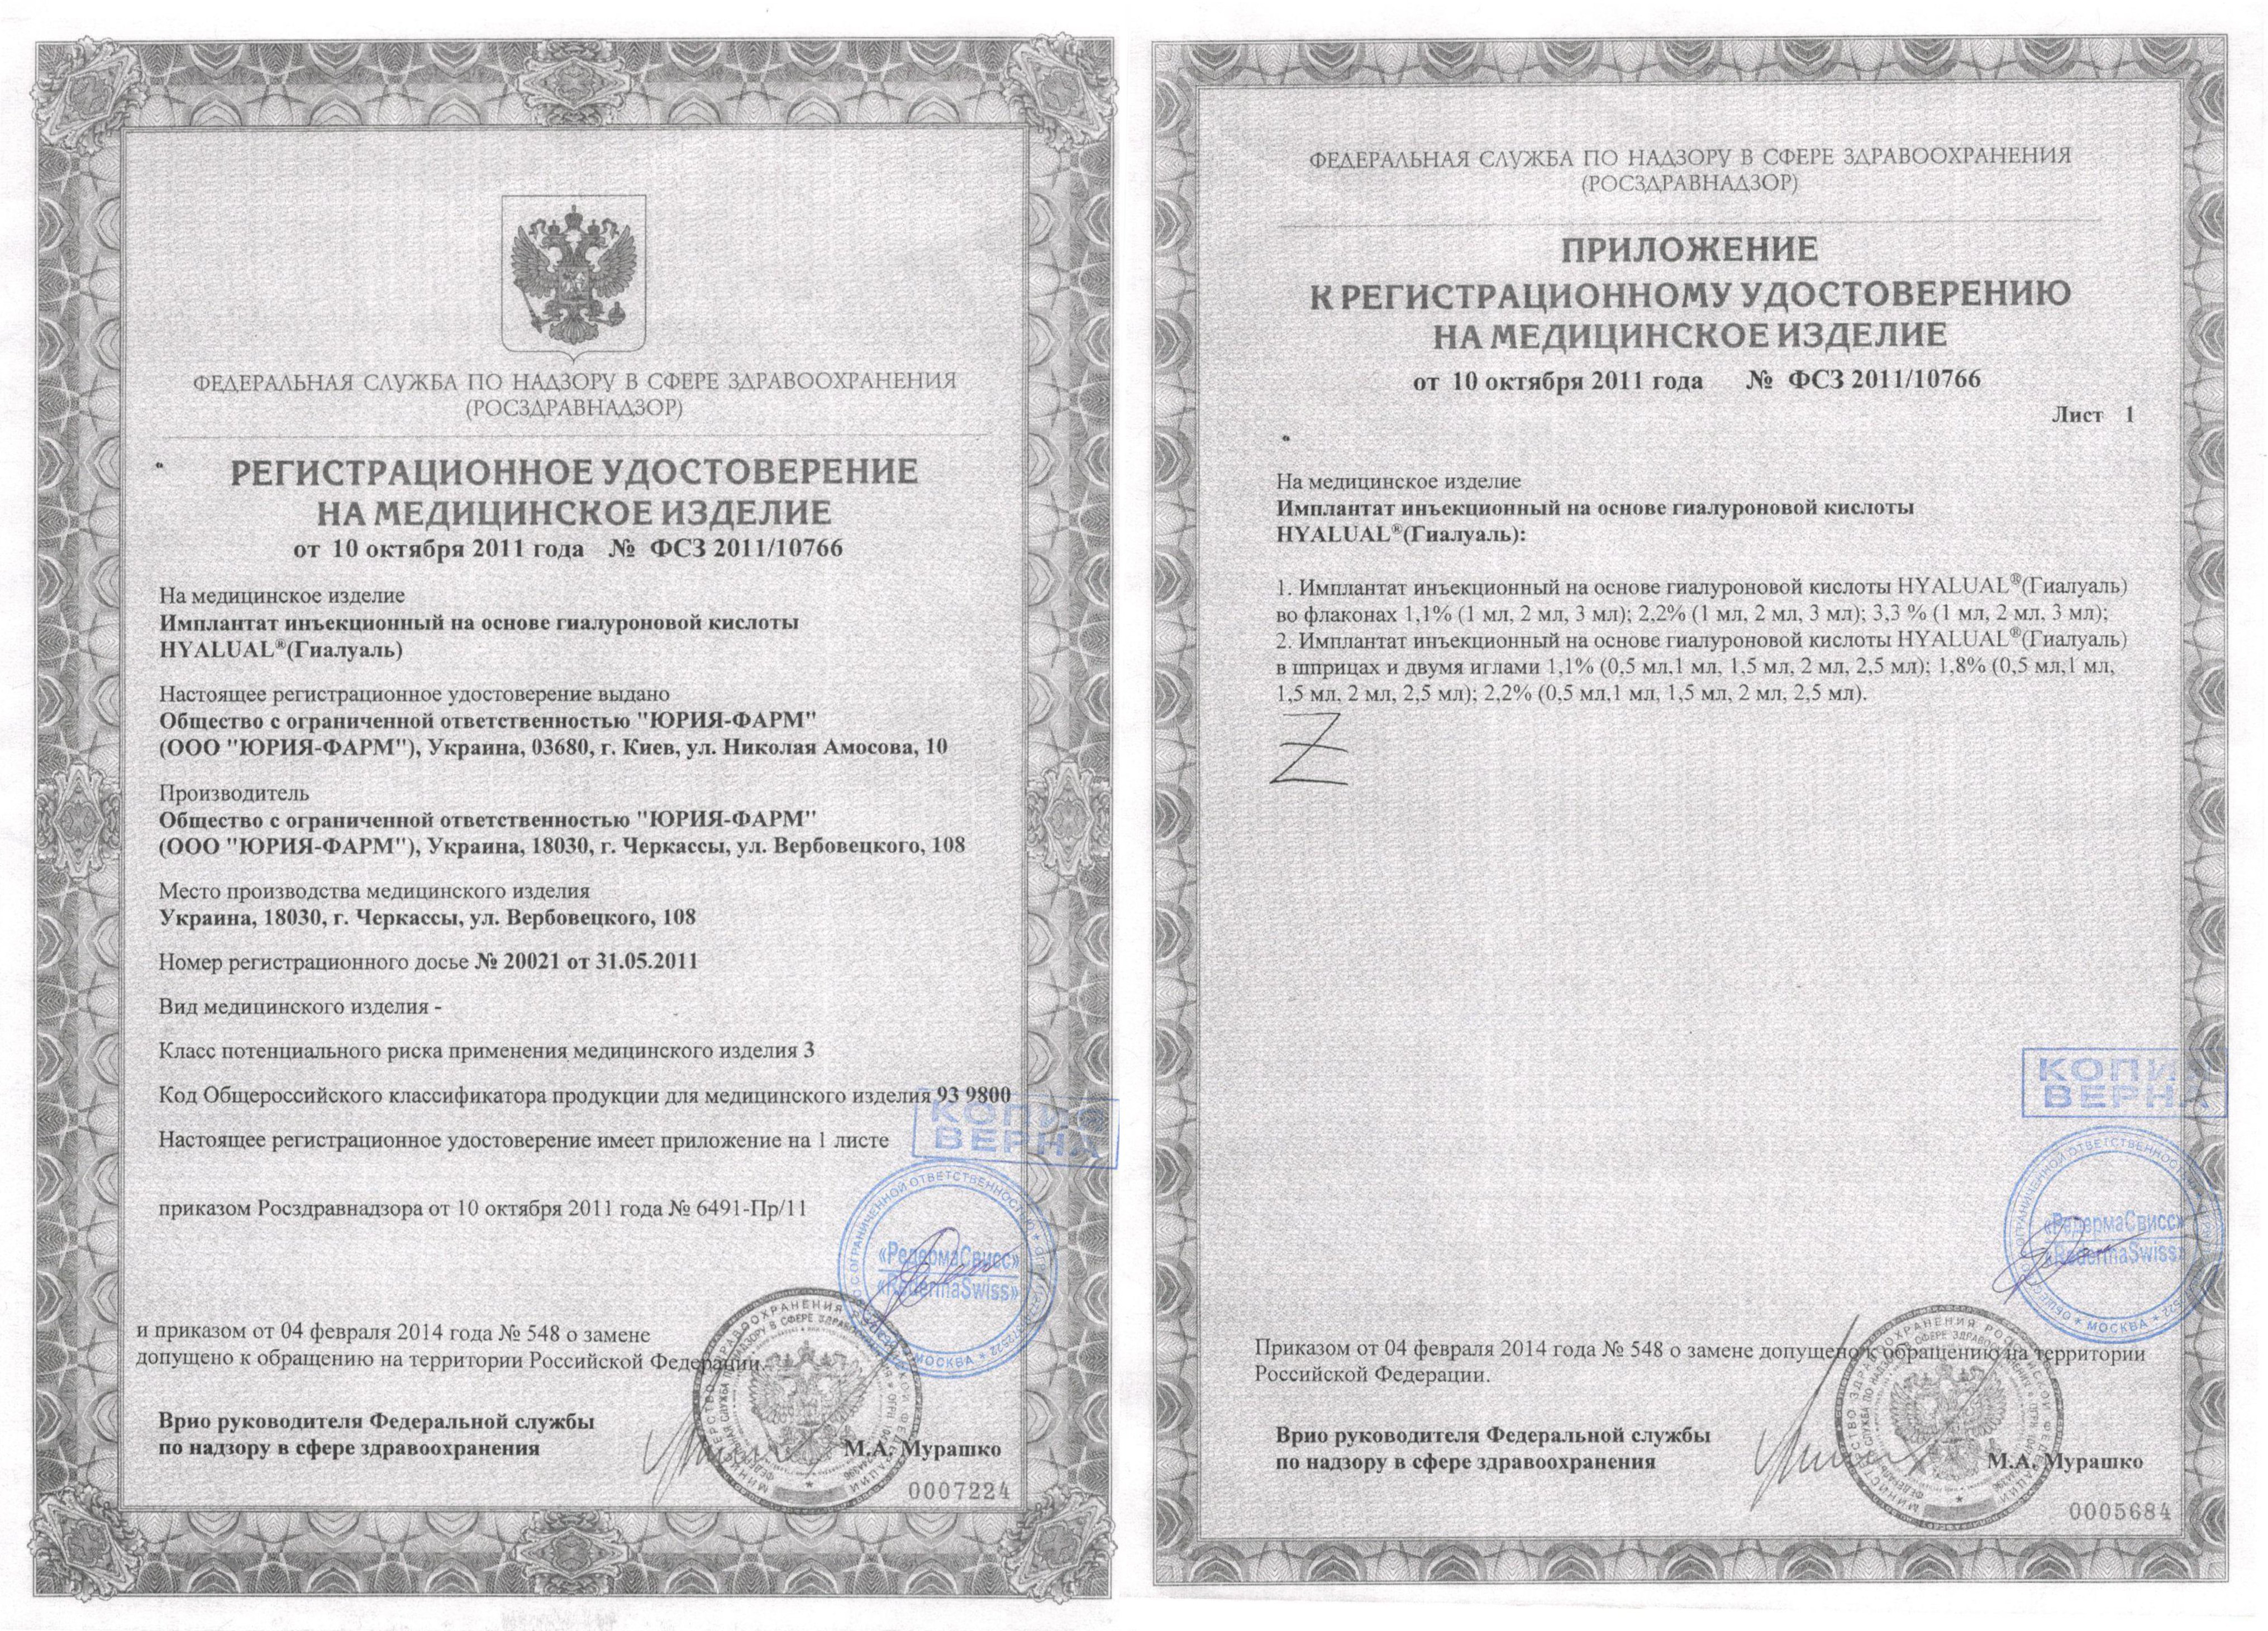 Регистрационное удостоверение ФСЗ 2011/10766 от 10.10.2011